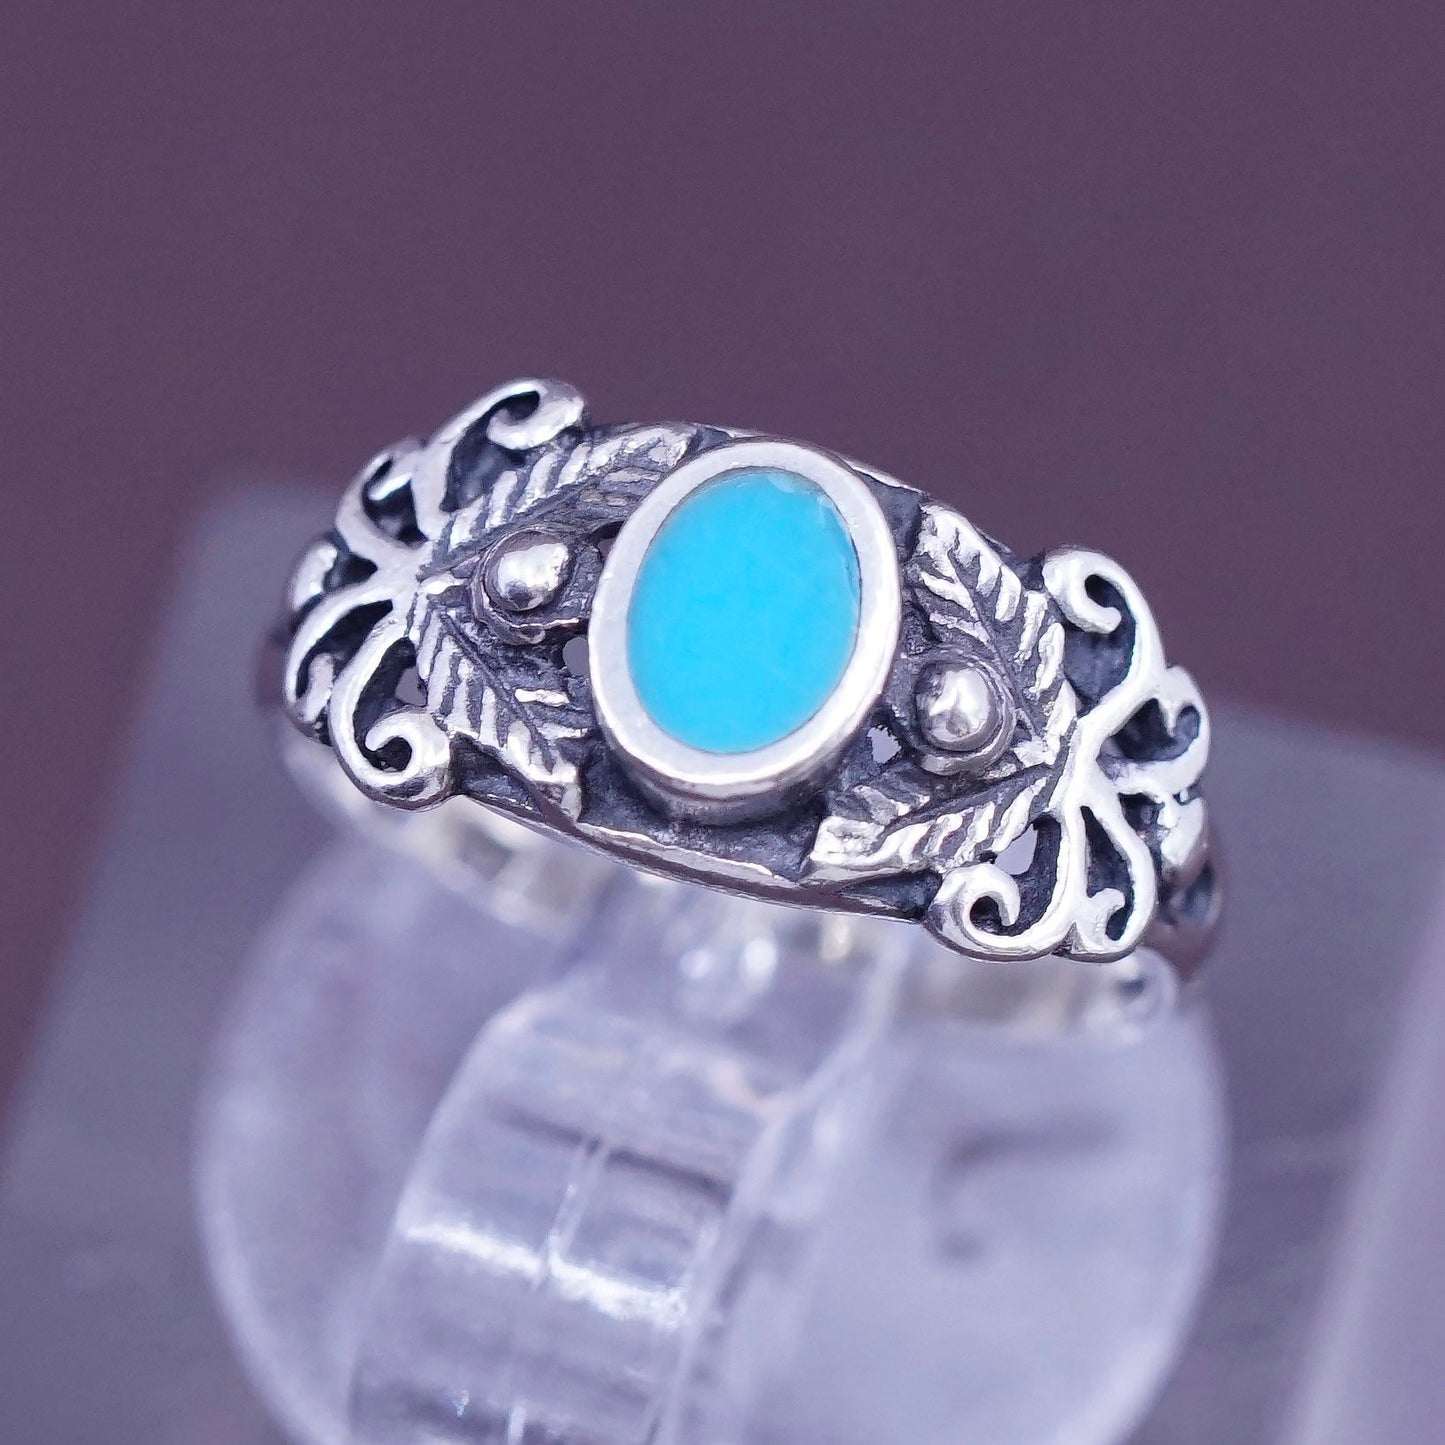 Size 1.5, vtg Sterling 925 silver handmade ring w/ turquoise N filigree flower